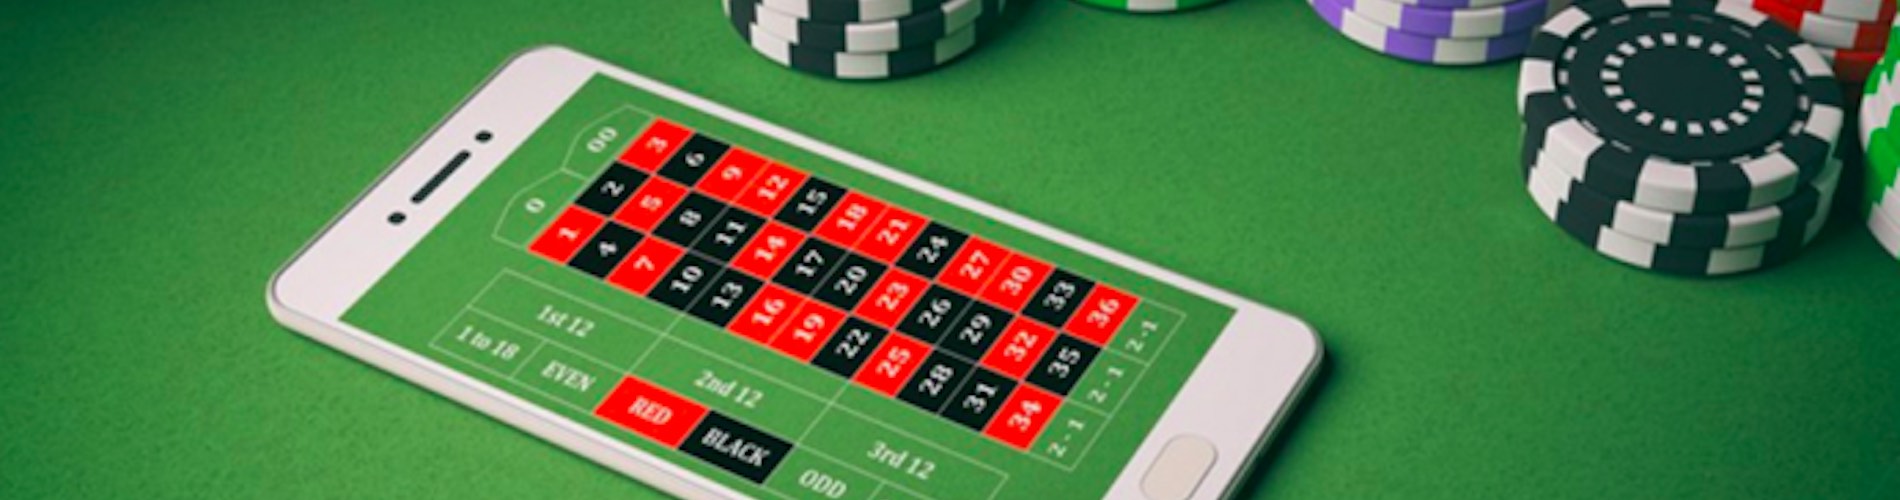 Les secrets pour trouver rapidement des outils de classe mondiale pour votre casino